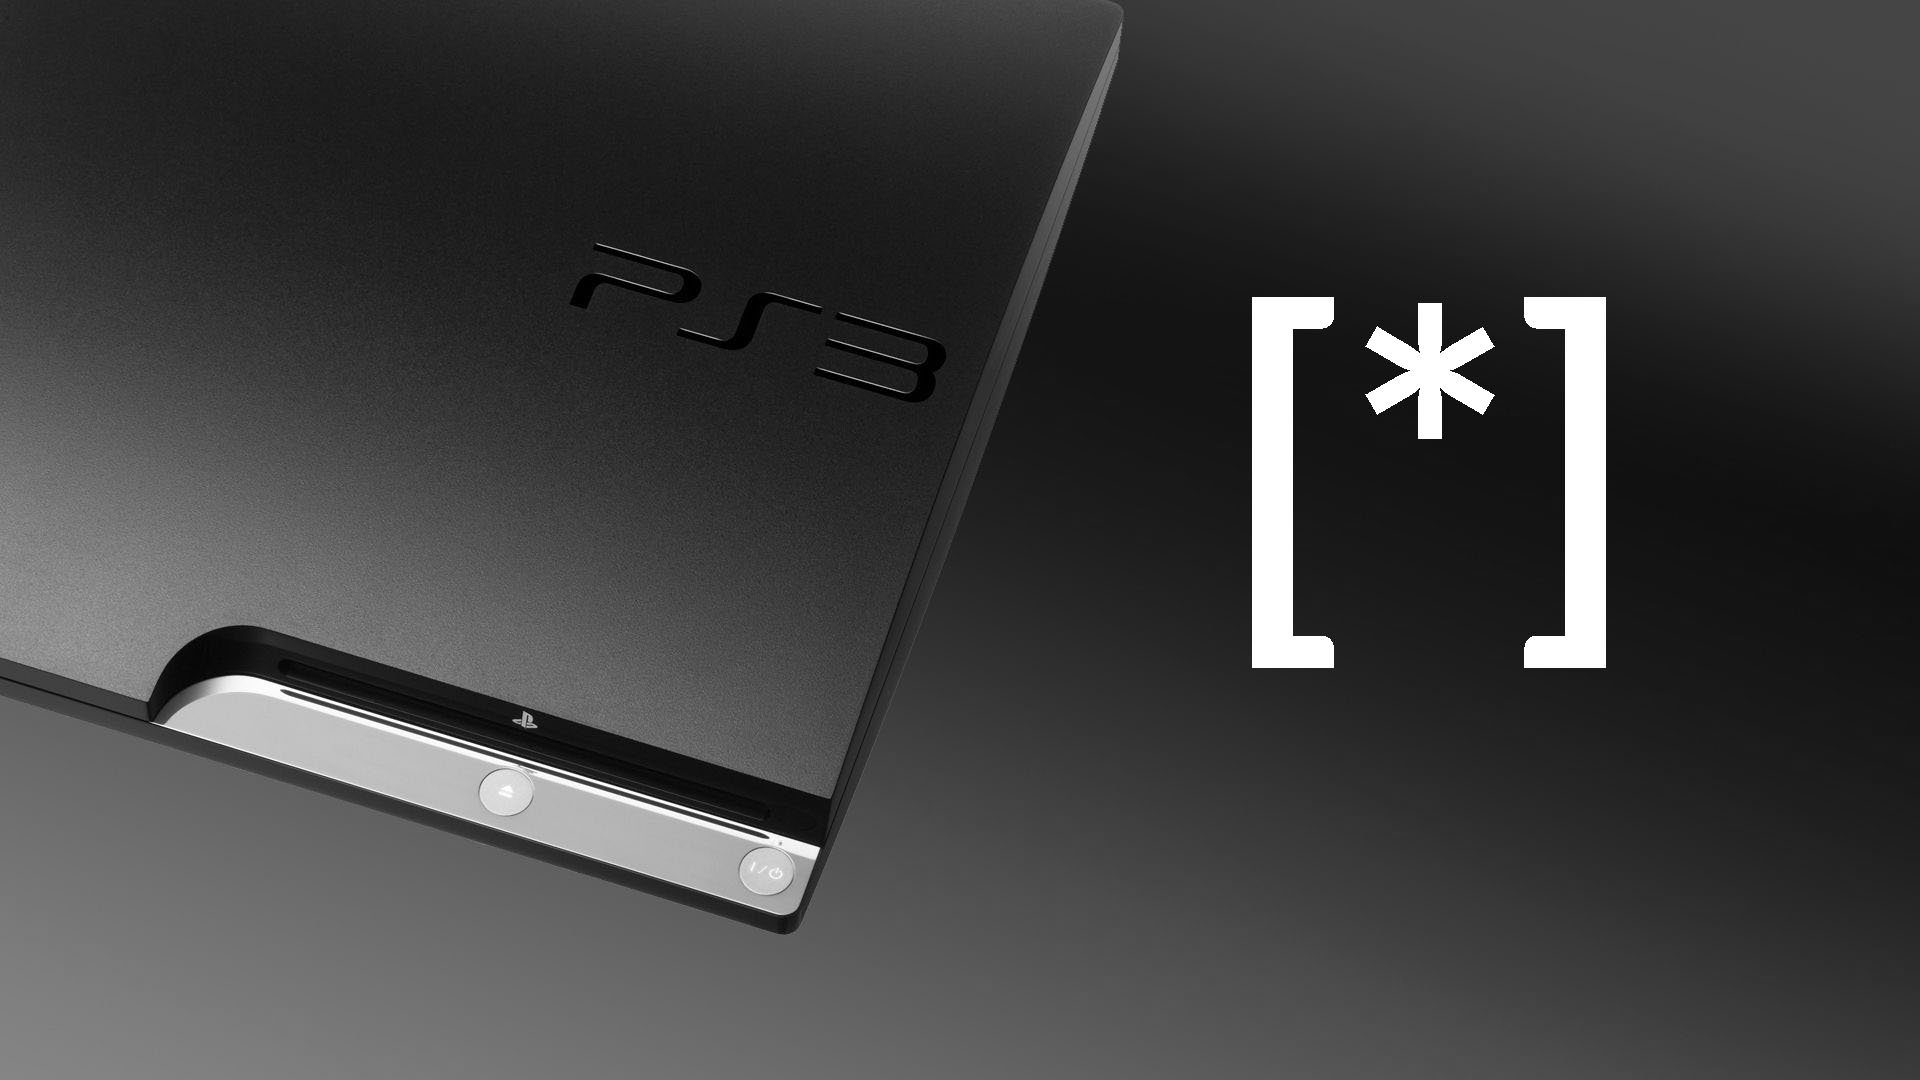 Sony stellt den Support für PlayStation 3 und Vita langsam ein. Konsolen verlieren den Zugriff auf den PS Store 172